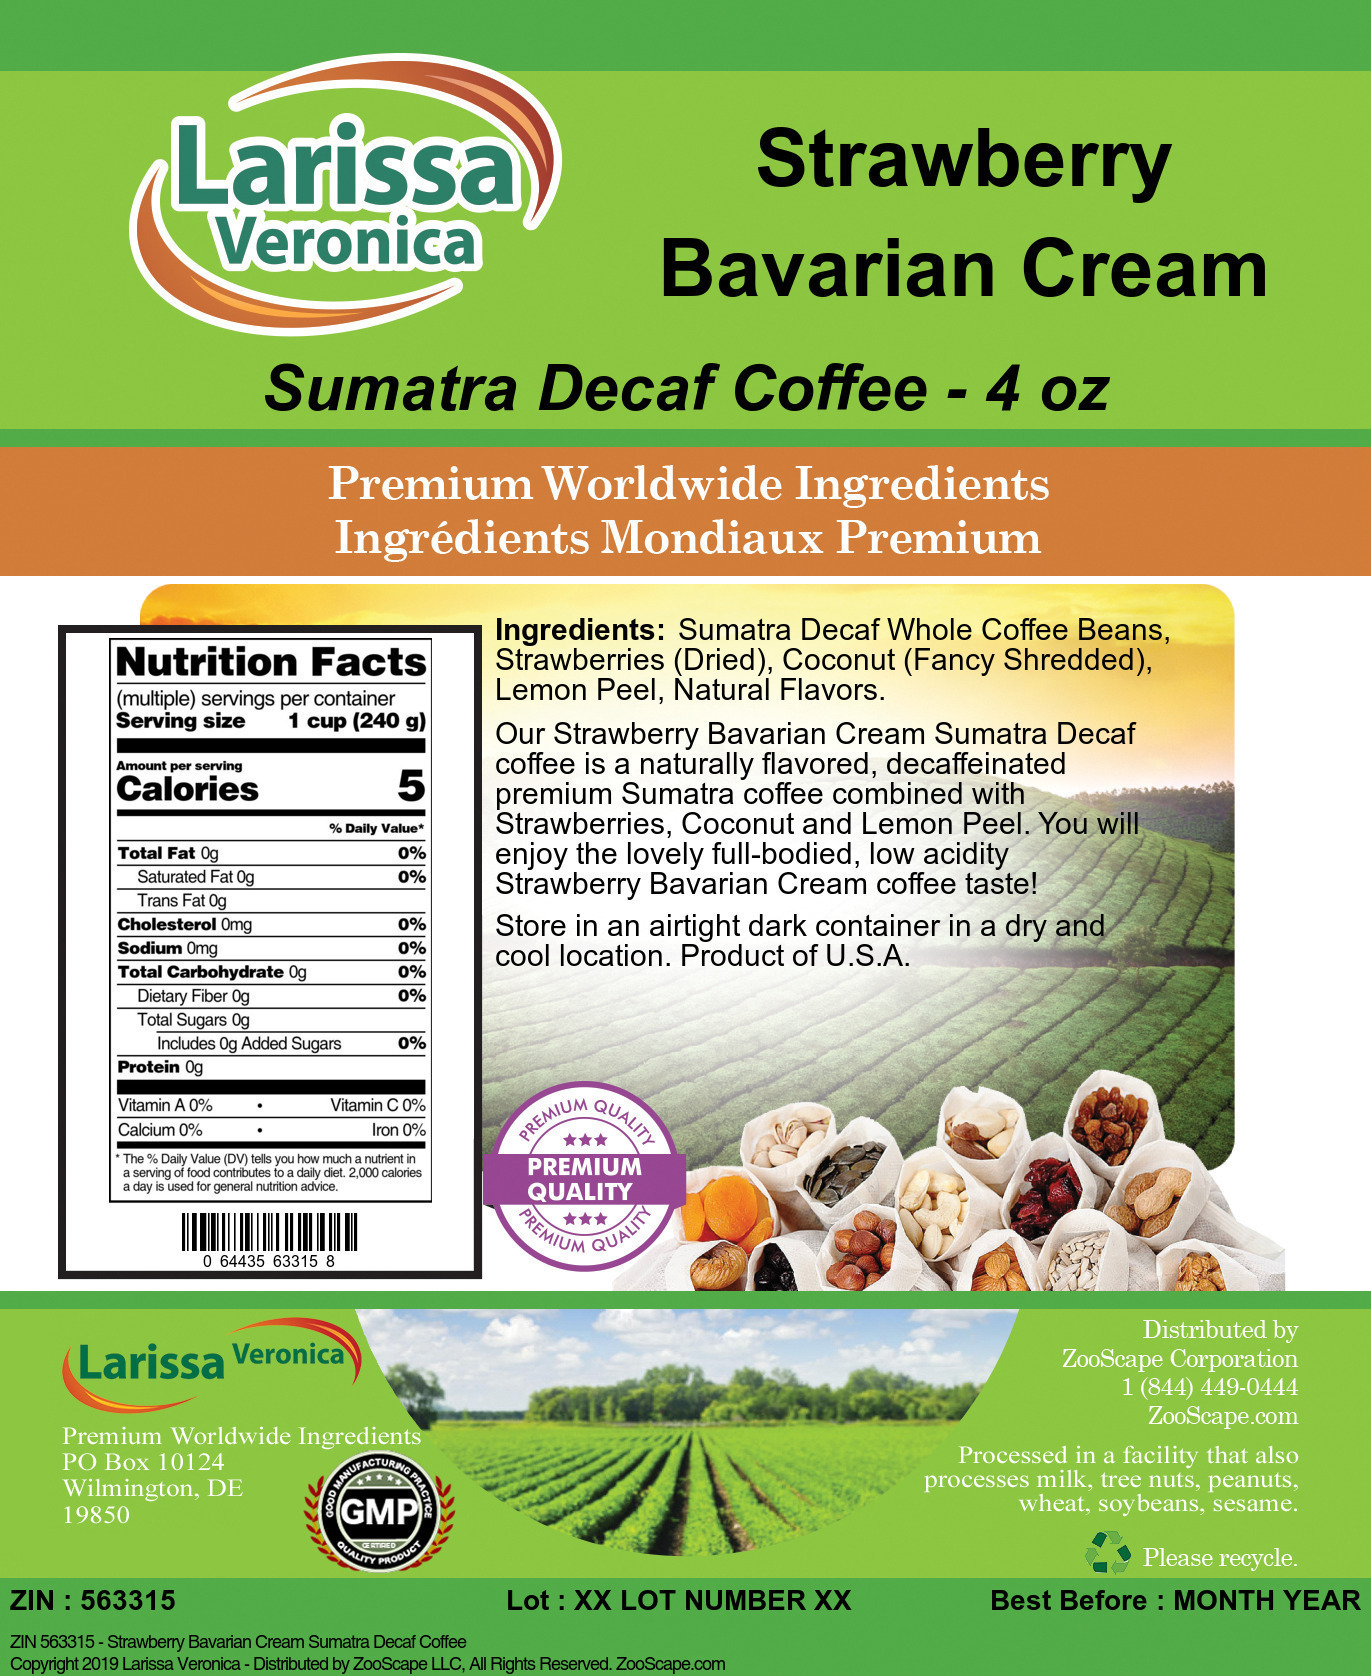 Strawberry Bavarian Cream Sumatra Decaf Coffee - Label